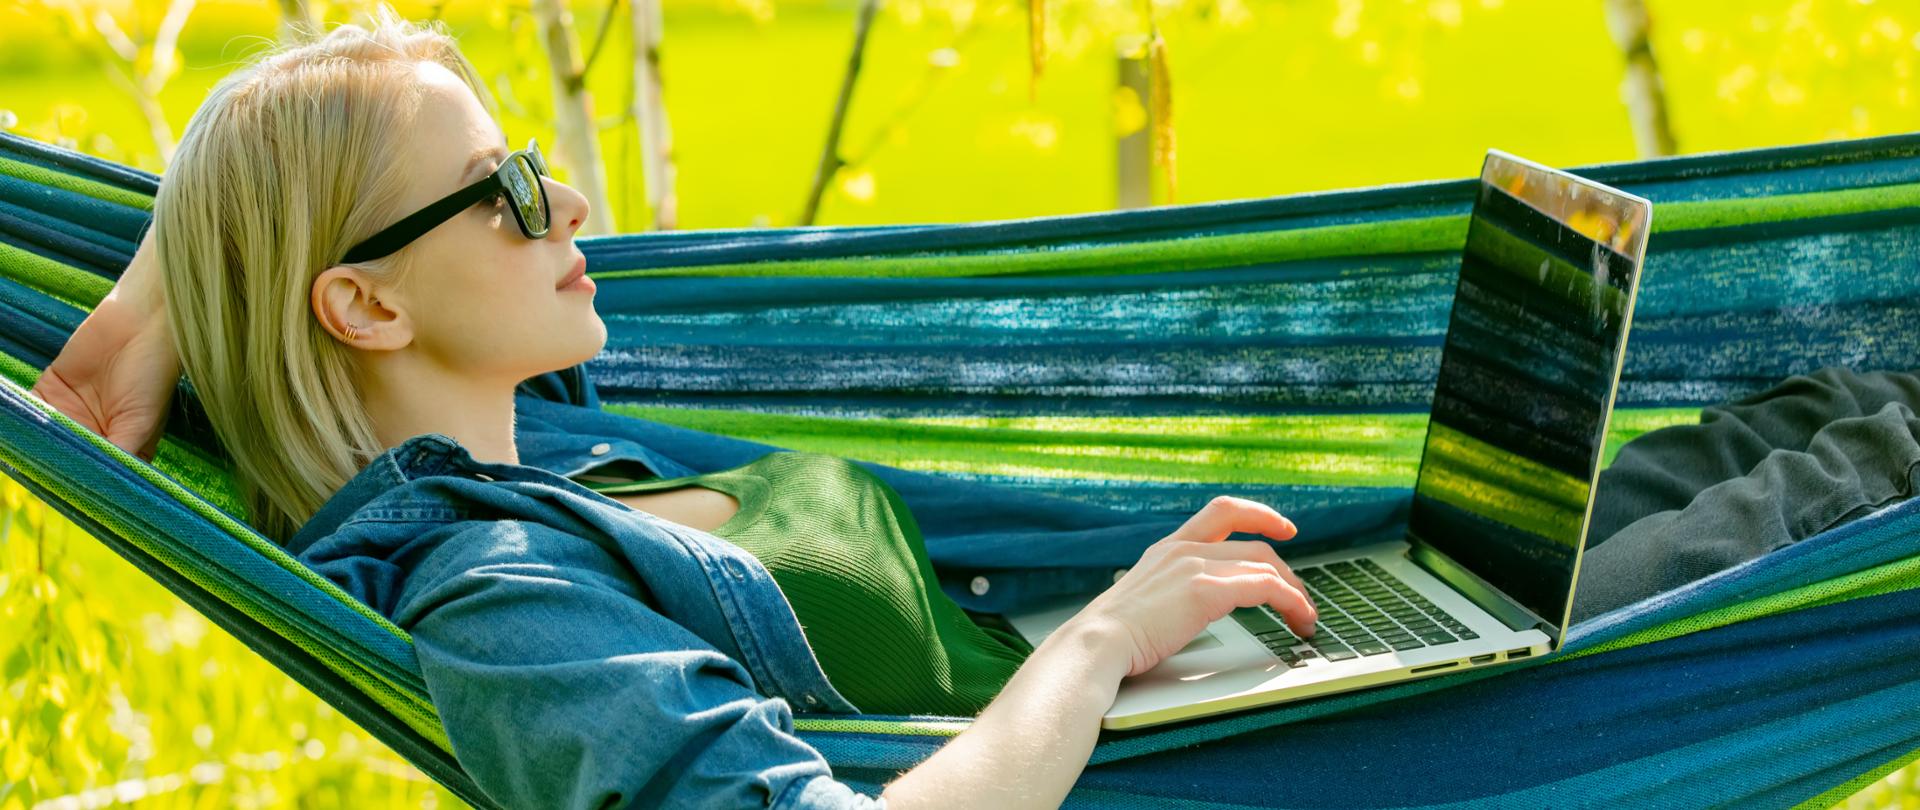 Młoda dziewczyna w okularach przeciwsłonecznych leży na hamaku i korzysta z laptopa.